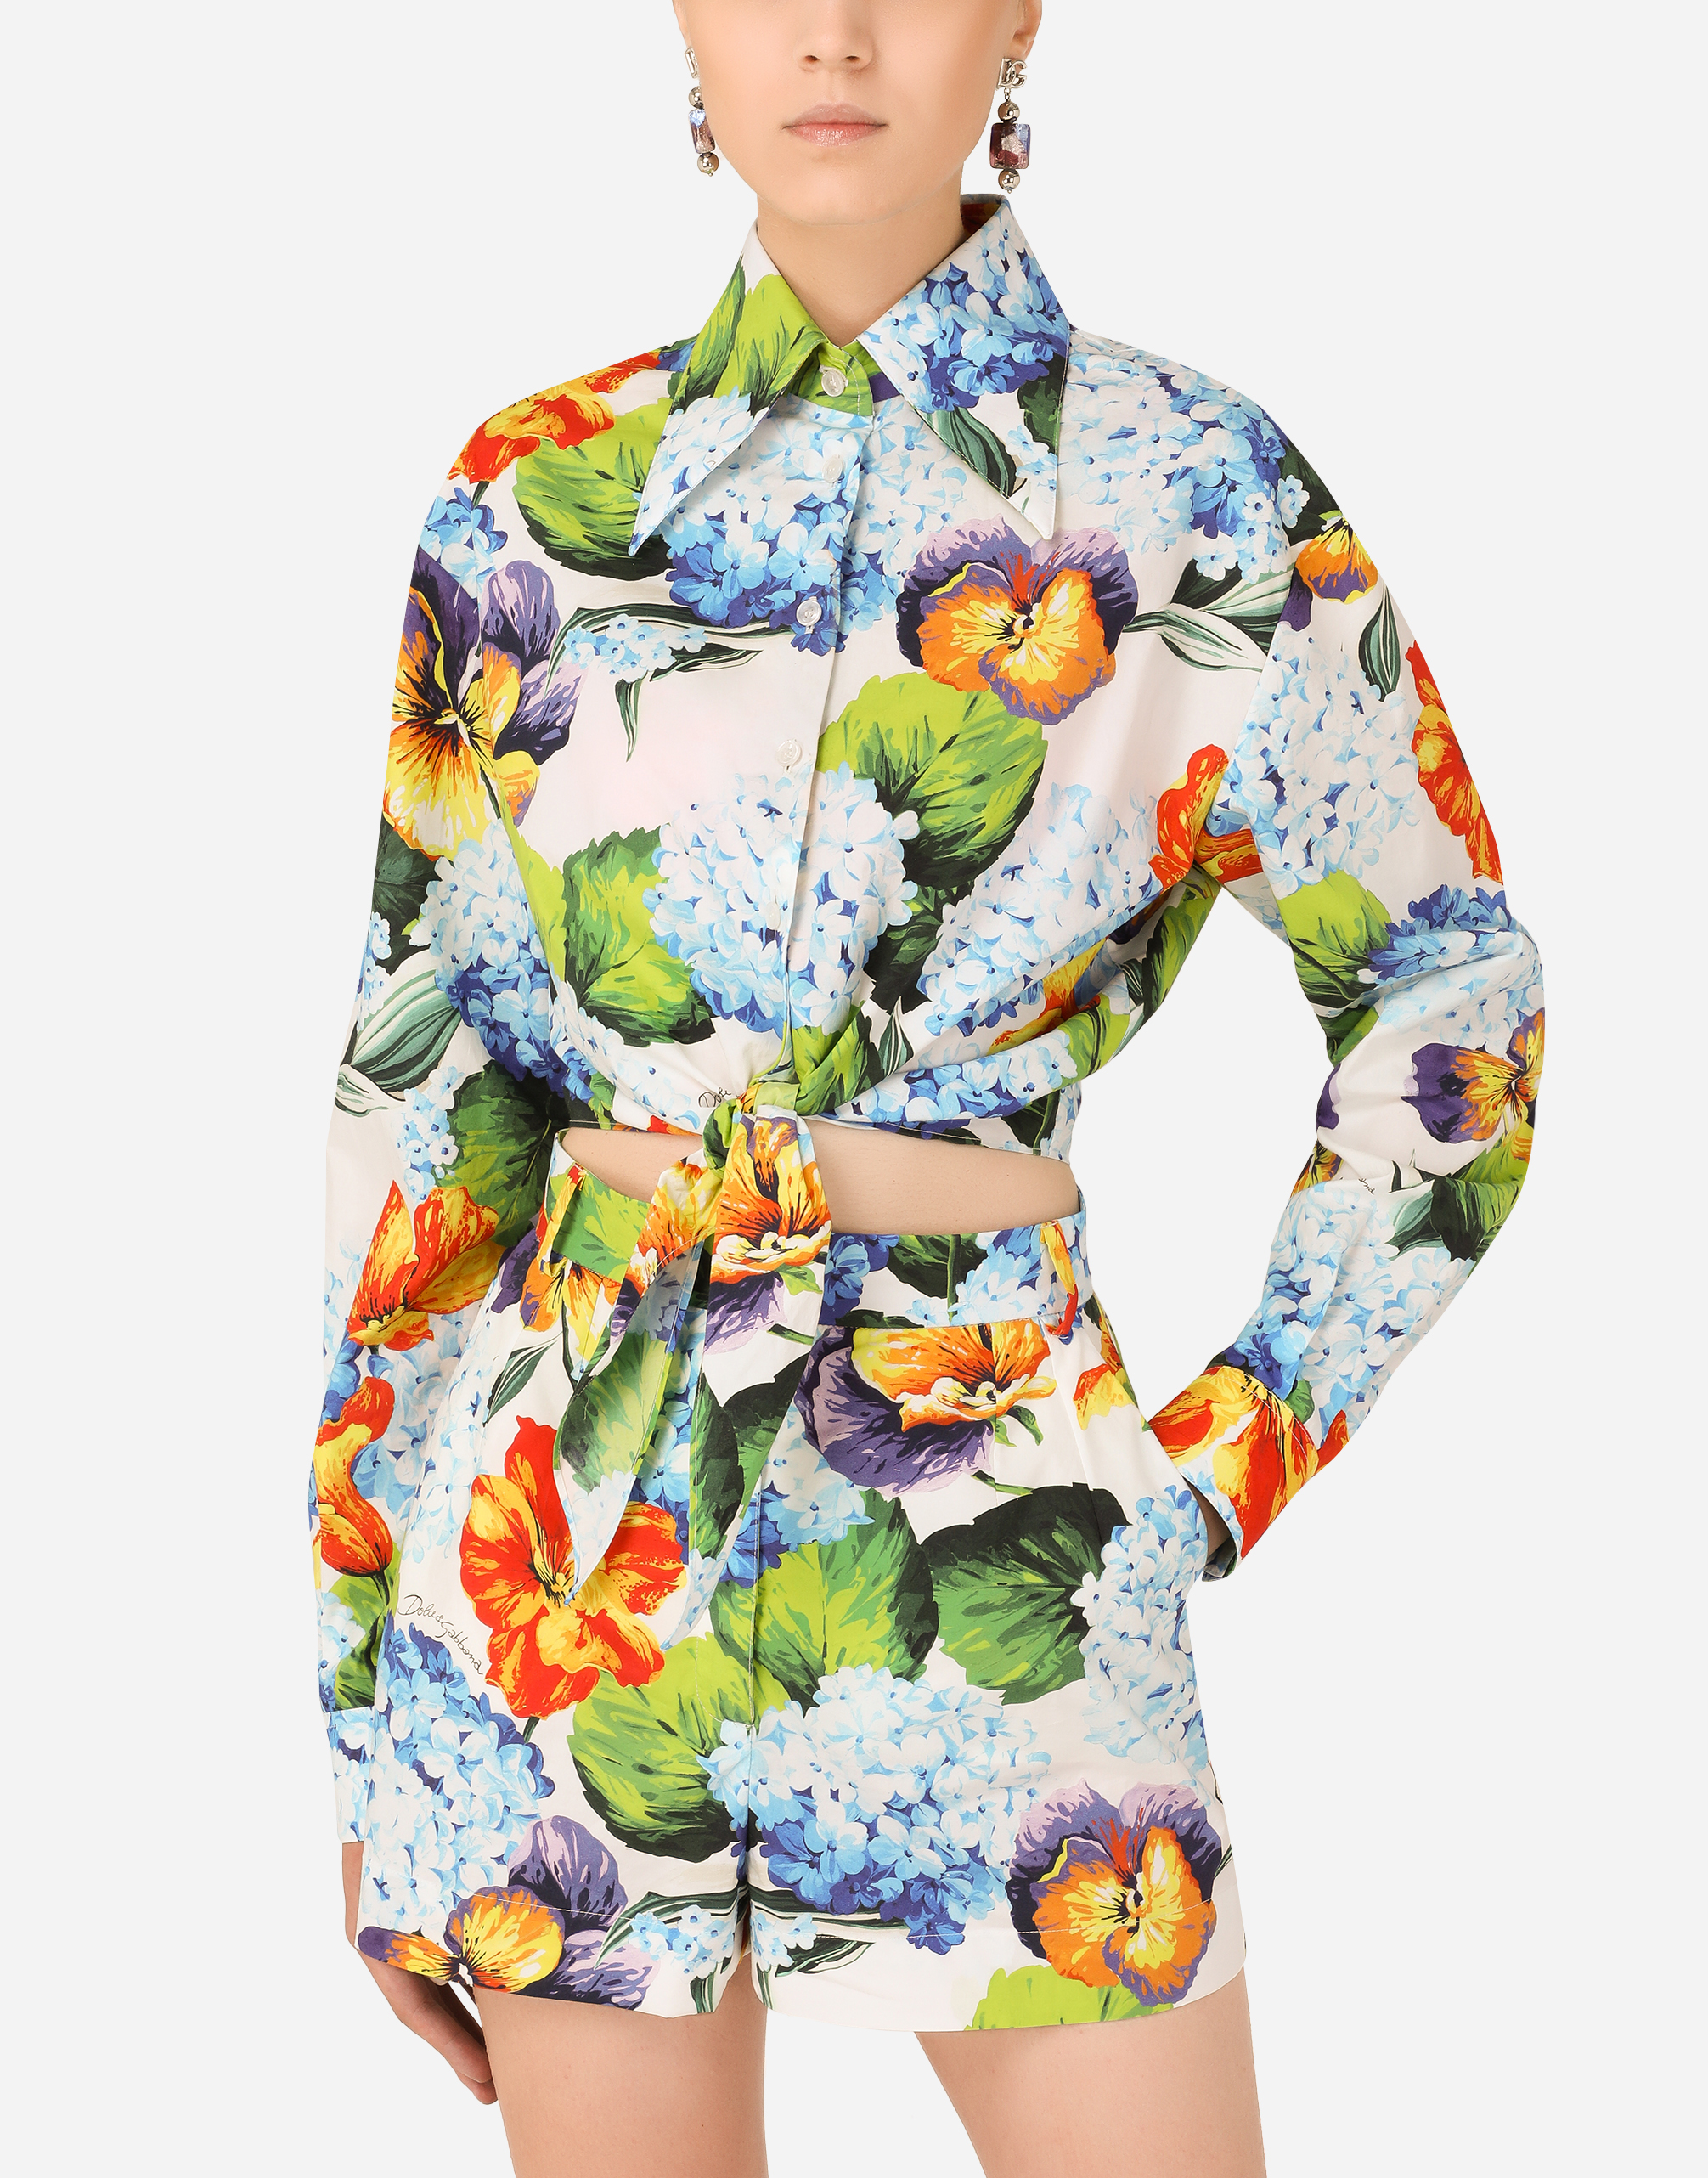 Hydrangea-print poplin shirt with tie